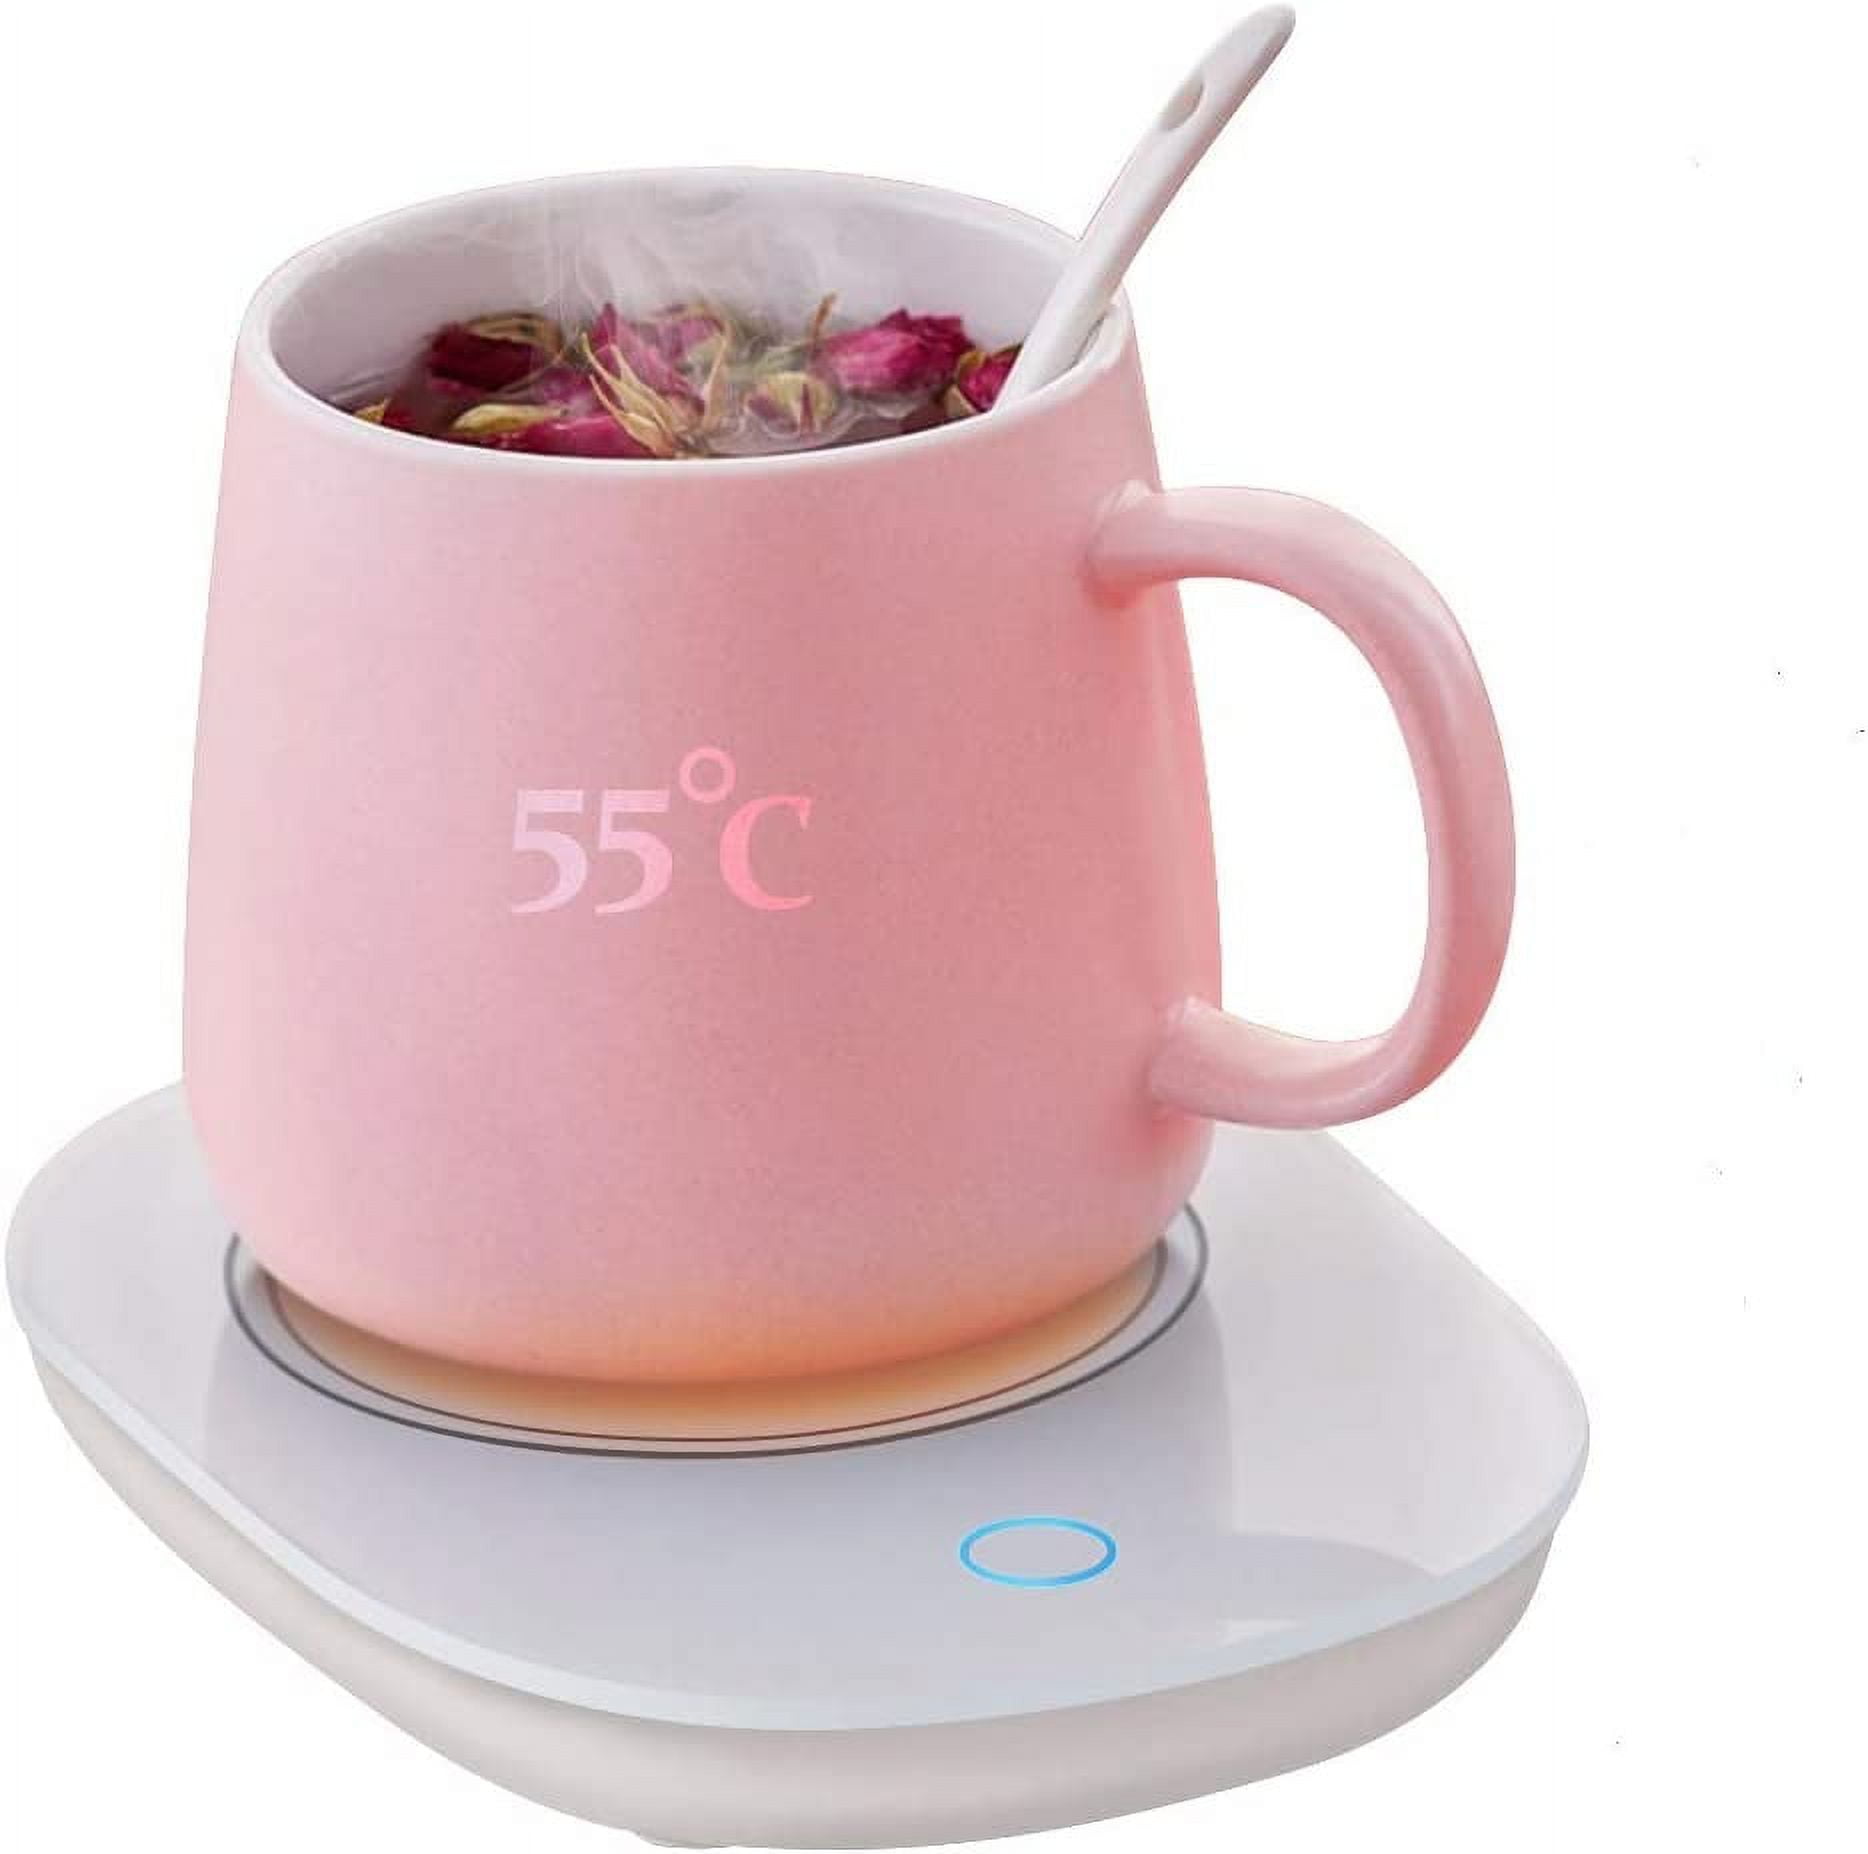 Etereauty Desktop USB Mug Warmer Electric Tea Coffee Cup Warmer Heater Plate for Desk, Size: 3.94 x 3.94 x 0.79, Silver